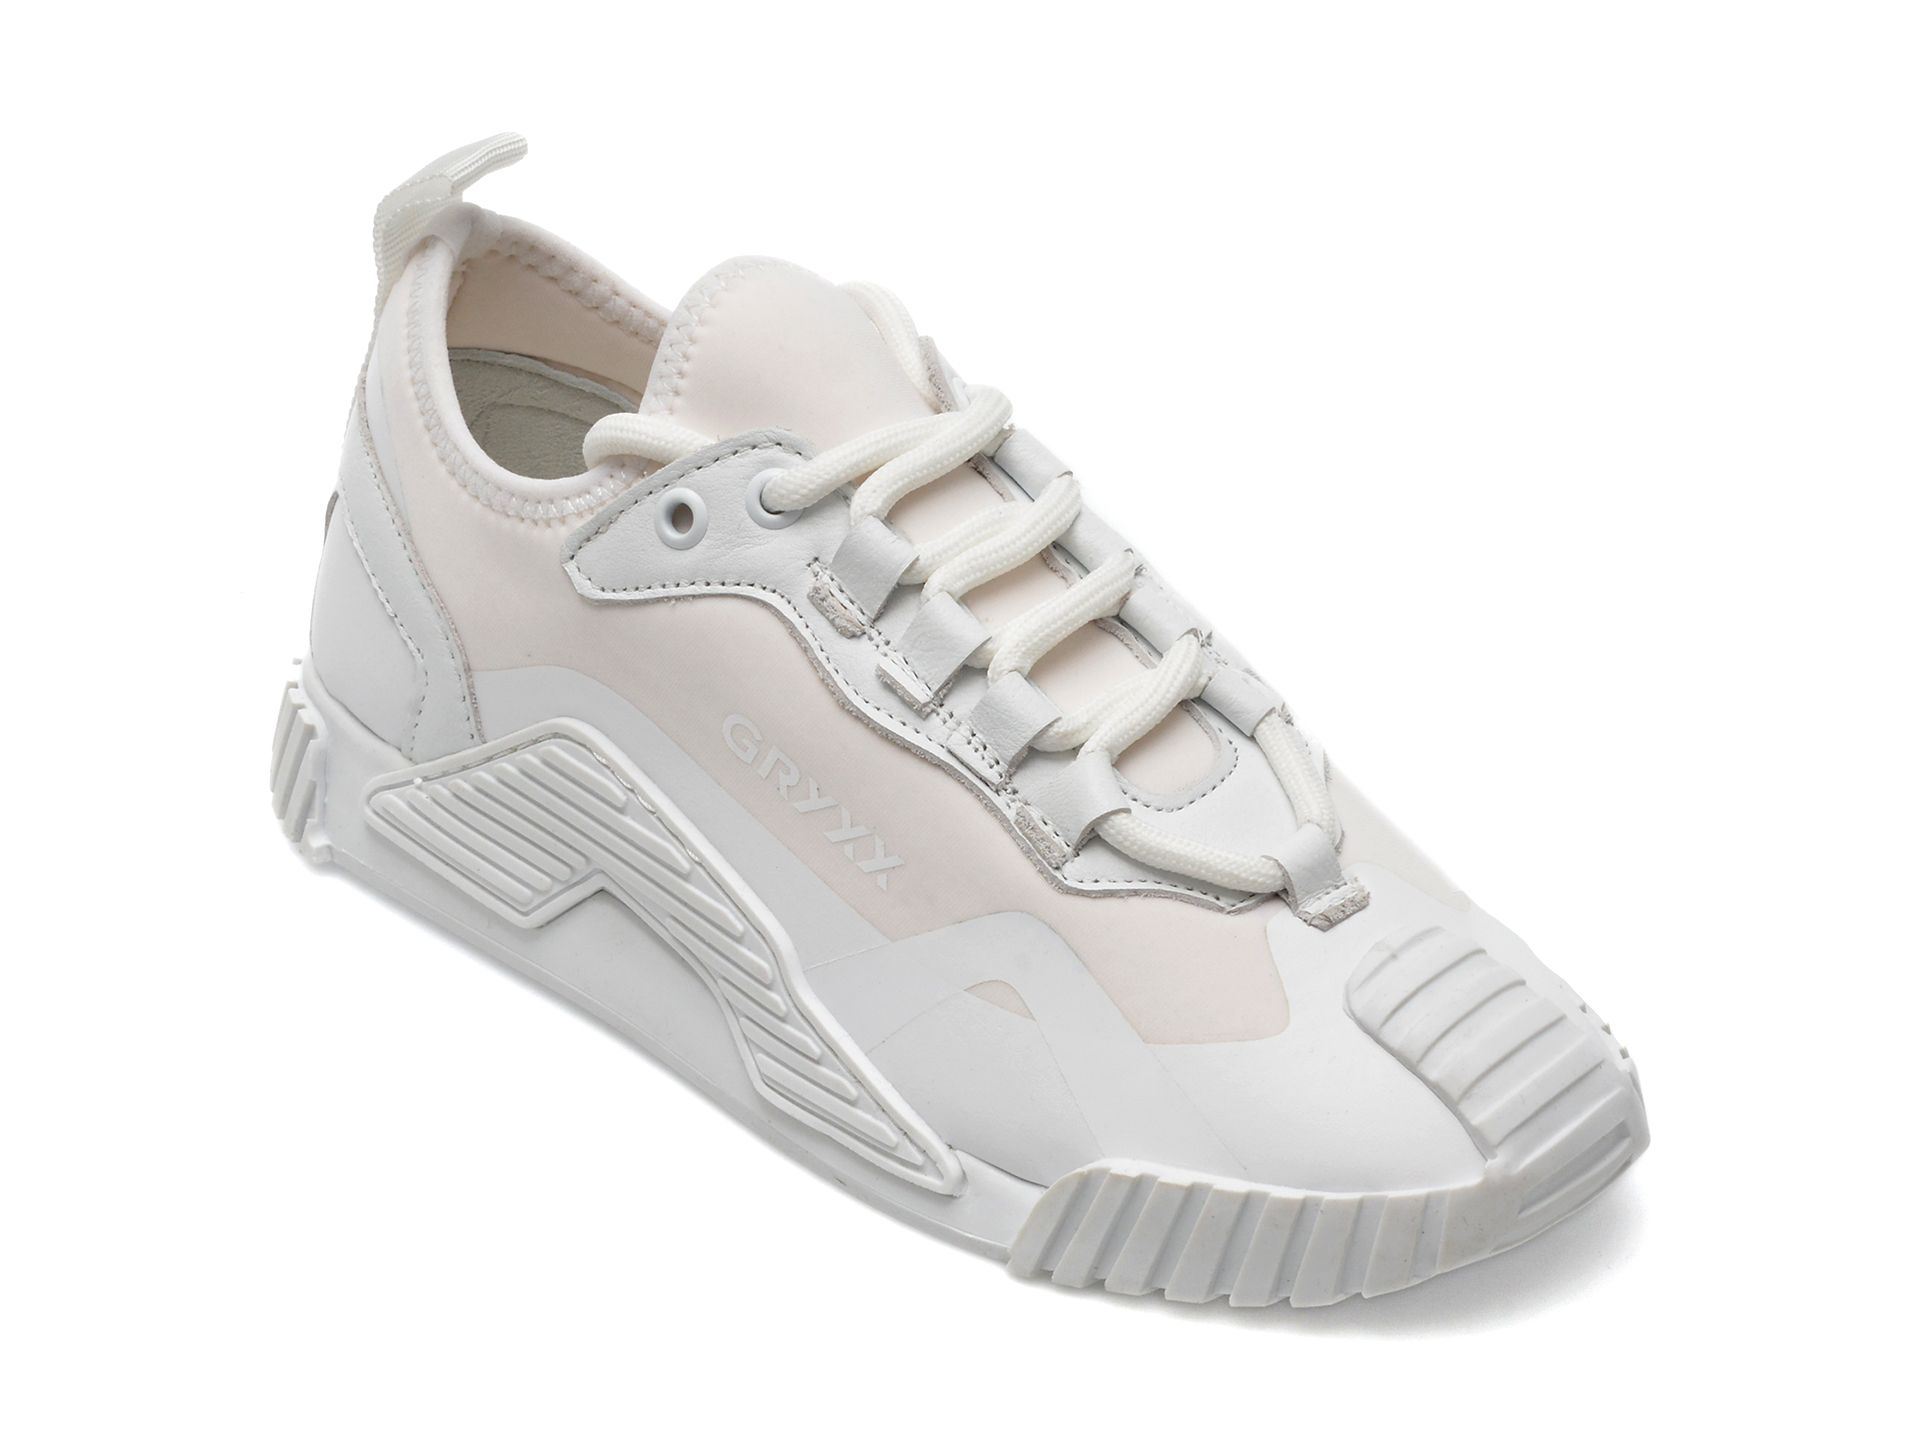 Pantofi GRYXX albi, MK11920, din material textil Answear 2023-05-30